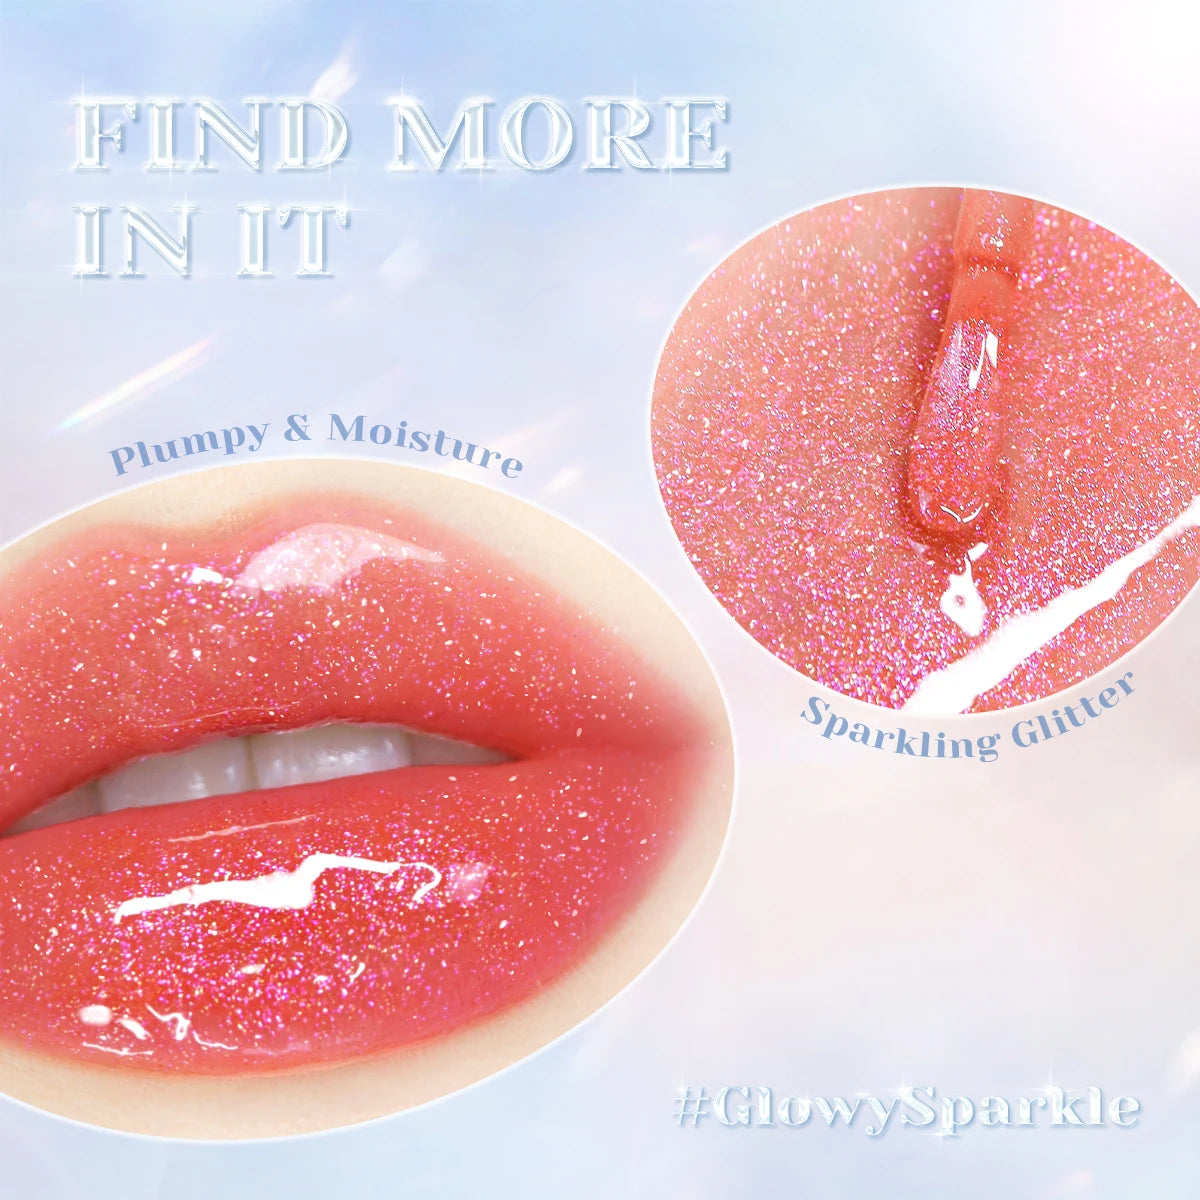 Focallure Long-Lasting Shimmer Moisturizing Lip Plumber Lip Tint Gloss